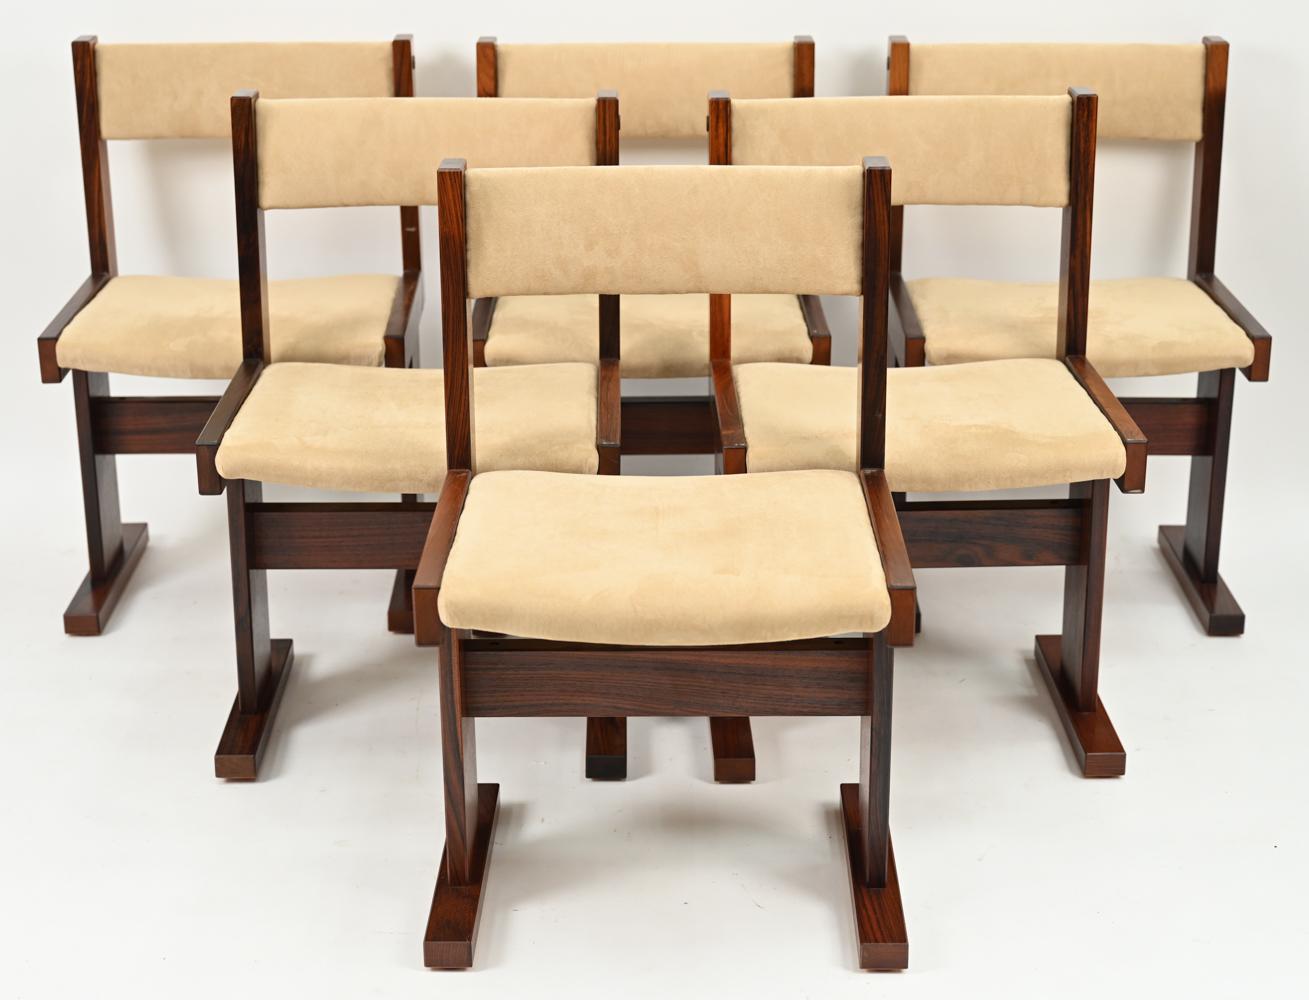 Un bel ensemble de 6 chaises de salle à manger Modern Scandinavian Modern conçues par Poul H. Poulsen pour Gangso Mobler, vers les années 1970. Ces magnifiques chaises en bois de rose s'associent parfaitement à ses tables design/One et reflètent